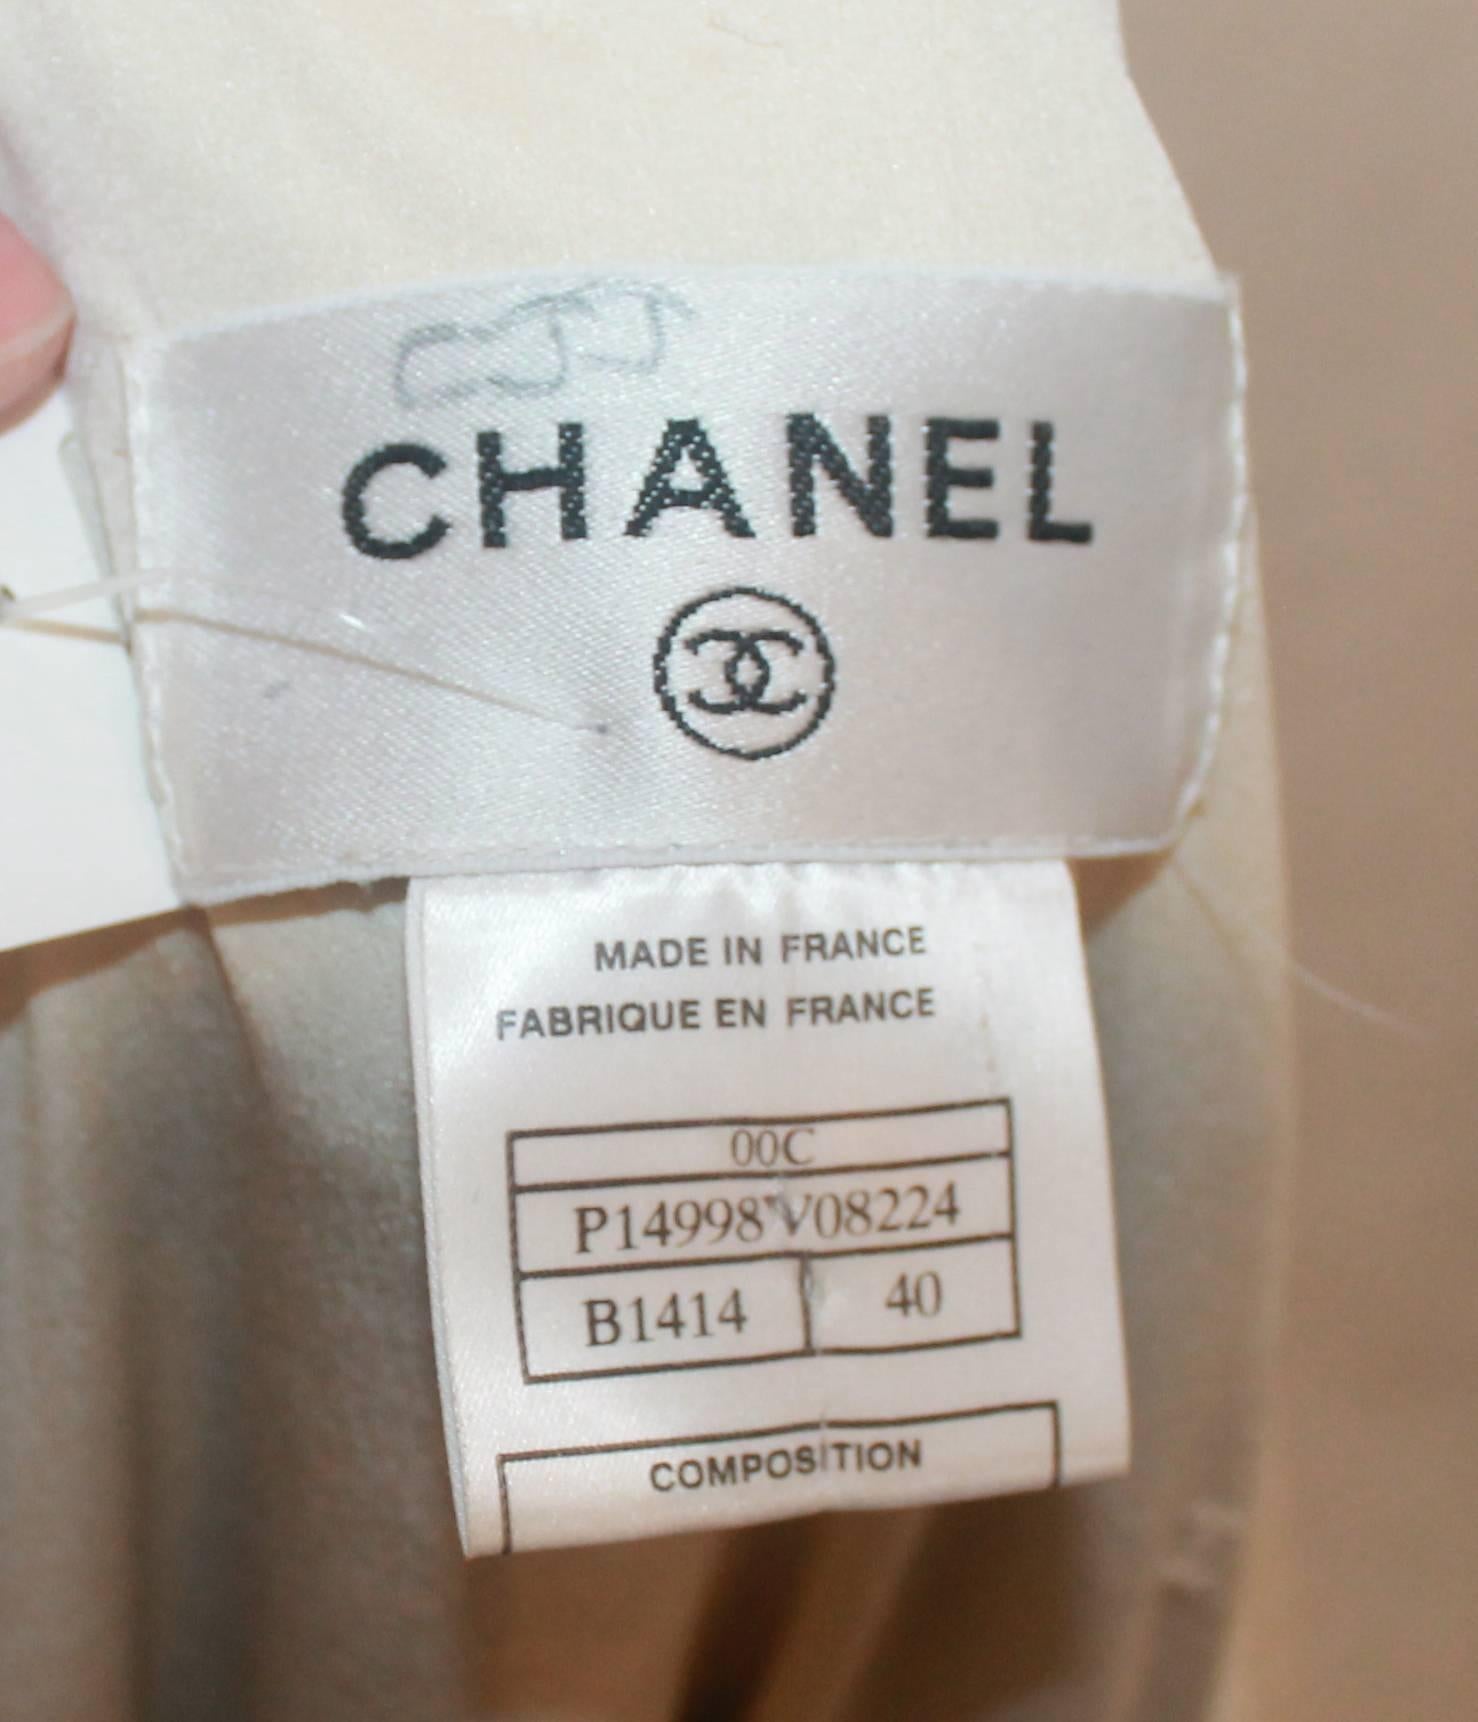 Chanel Earthtone & Blue Wool Blend Colorblock Jacket - 40 - 00C 2